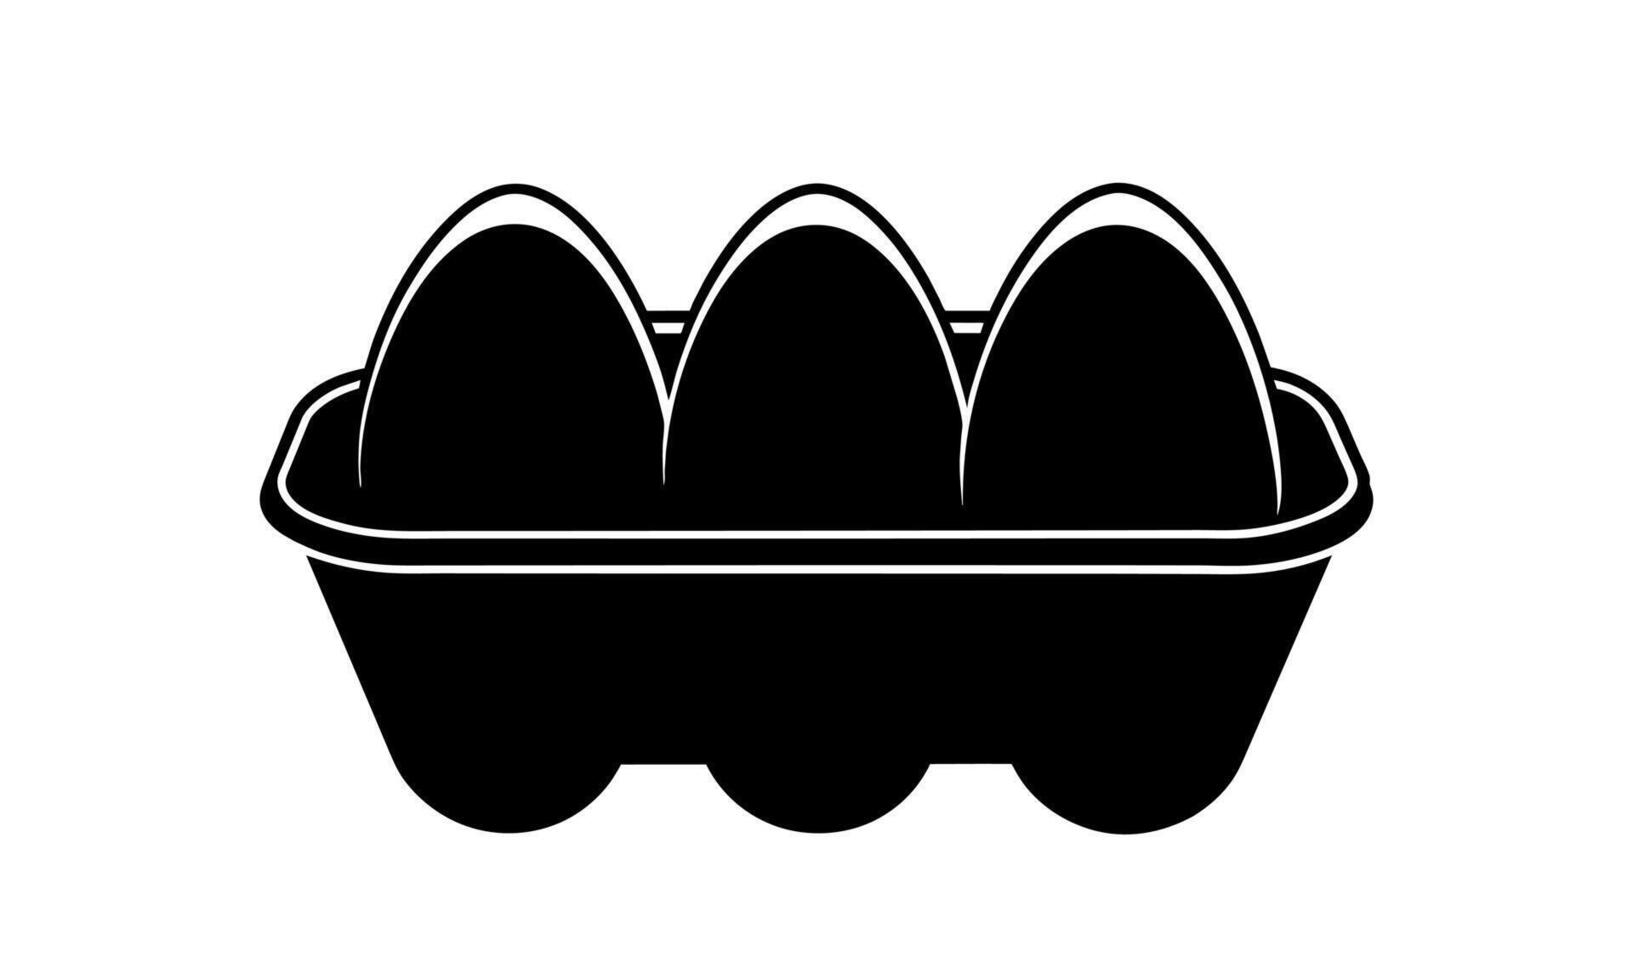 Oeuf carton avec des œufs. noir silhouette. noir et blanc Oeuf boîte graphique illustration. icône, signe, pictogramme. concept de nourriture stockage, cuisine essentiel, épicerie. isolé sur blanc Contexte. vecteur